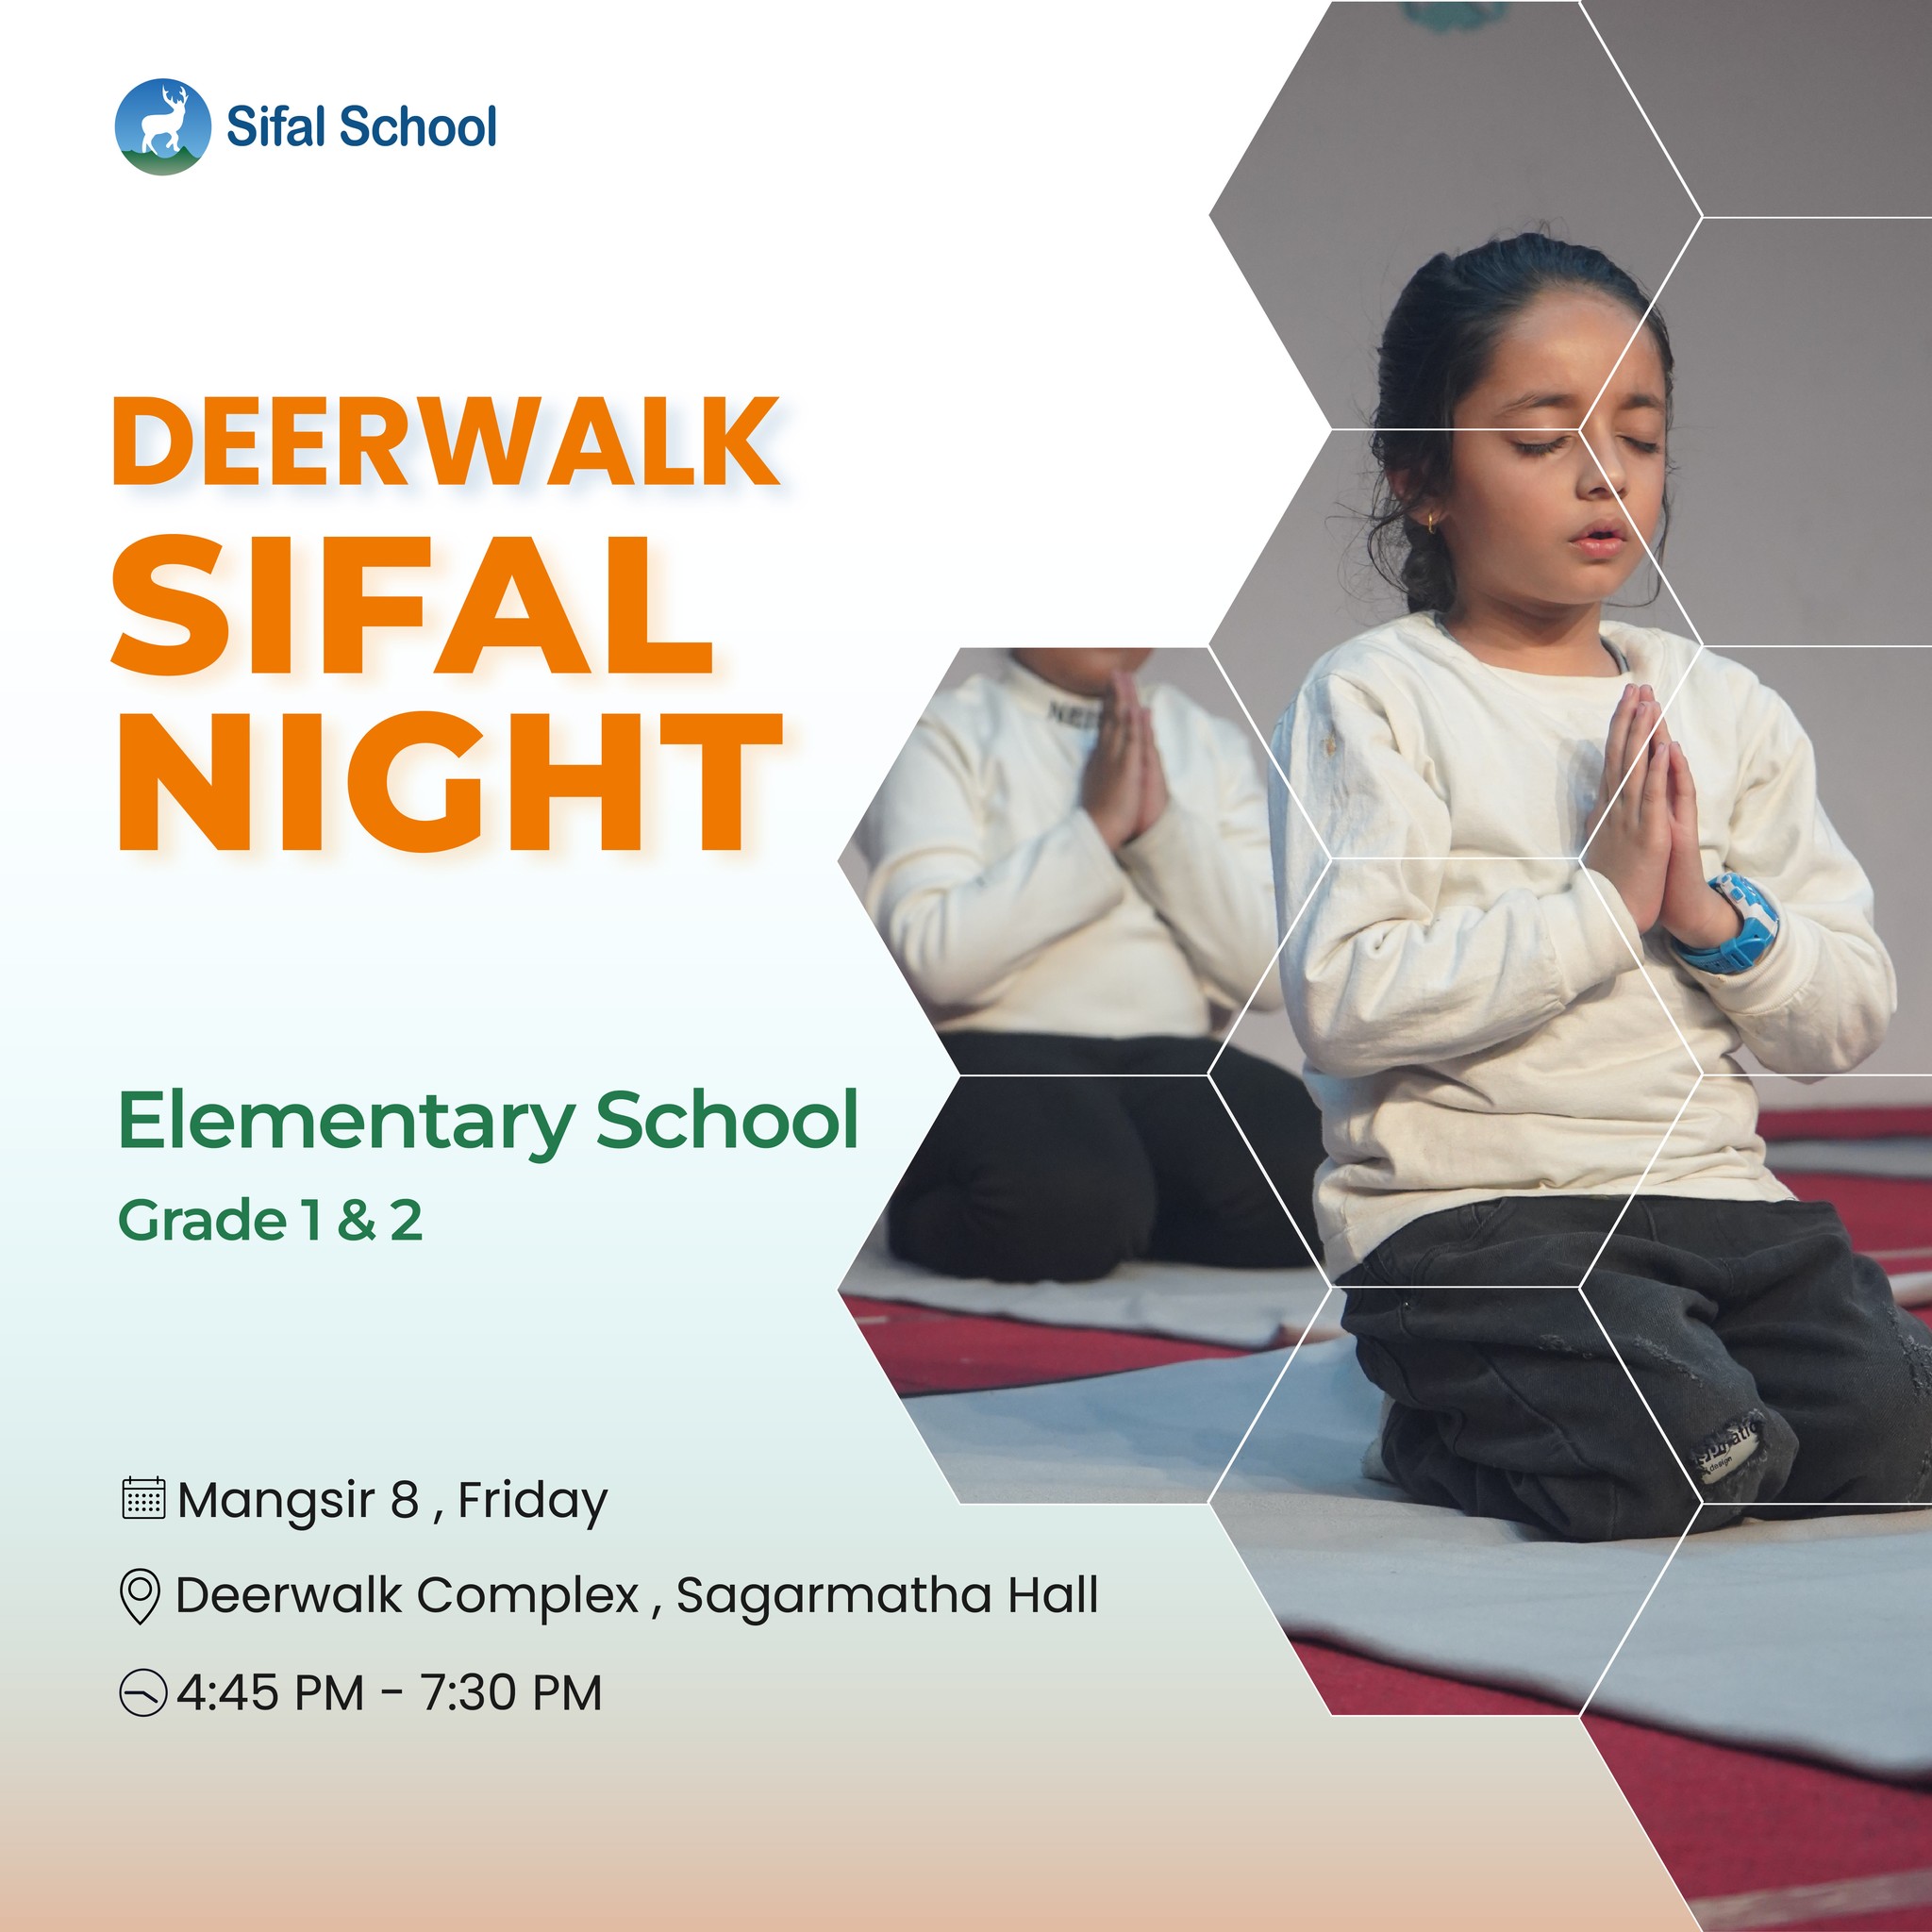 Deerwalk Sifal Night